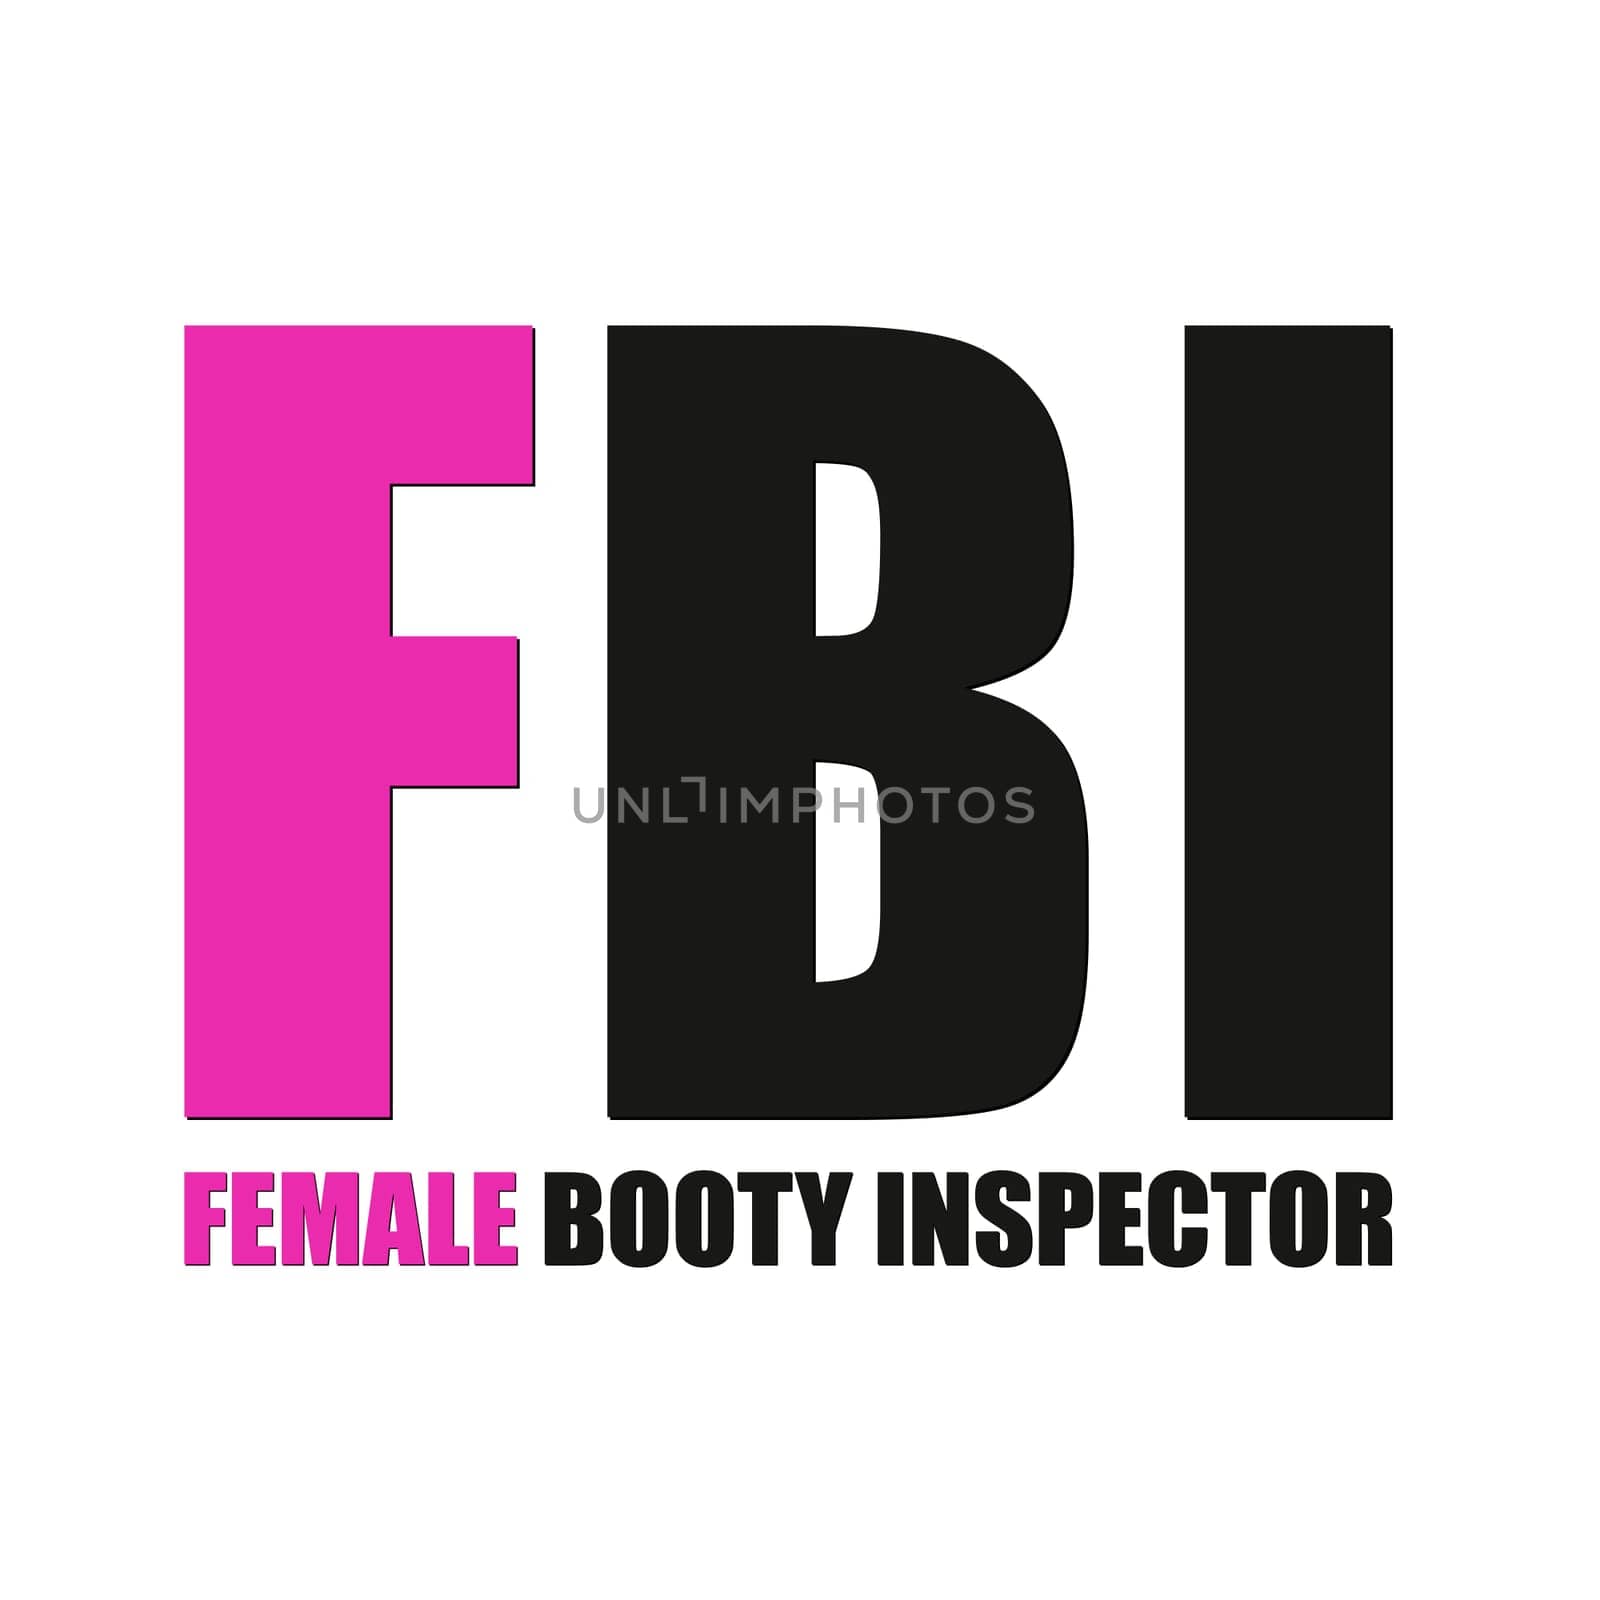 FBI Female Booty Inspector